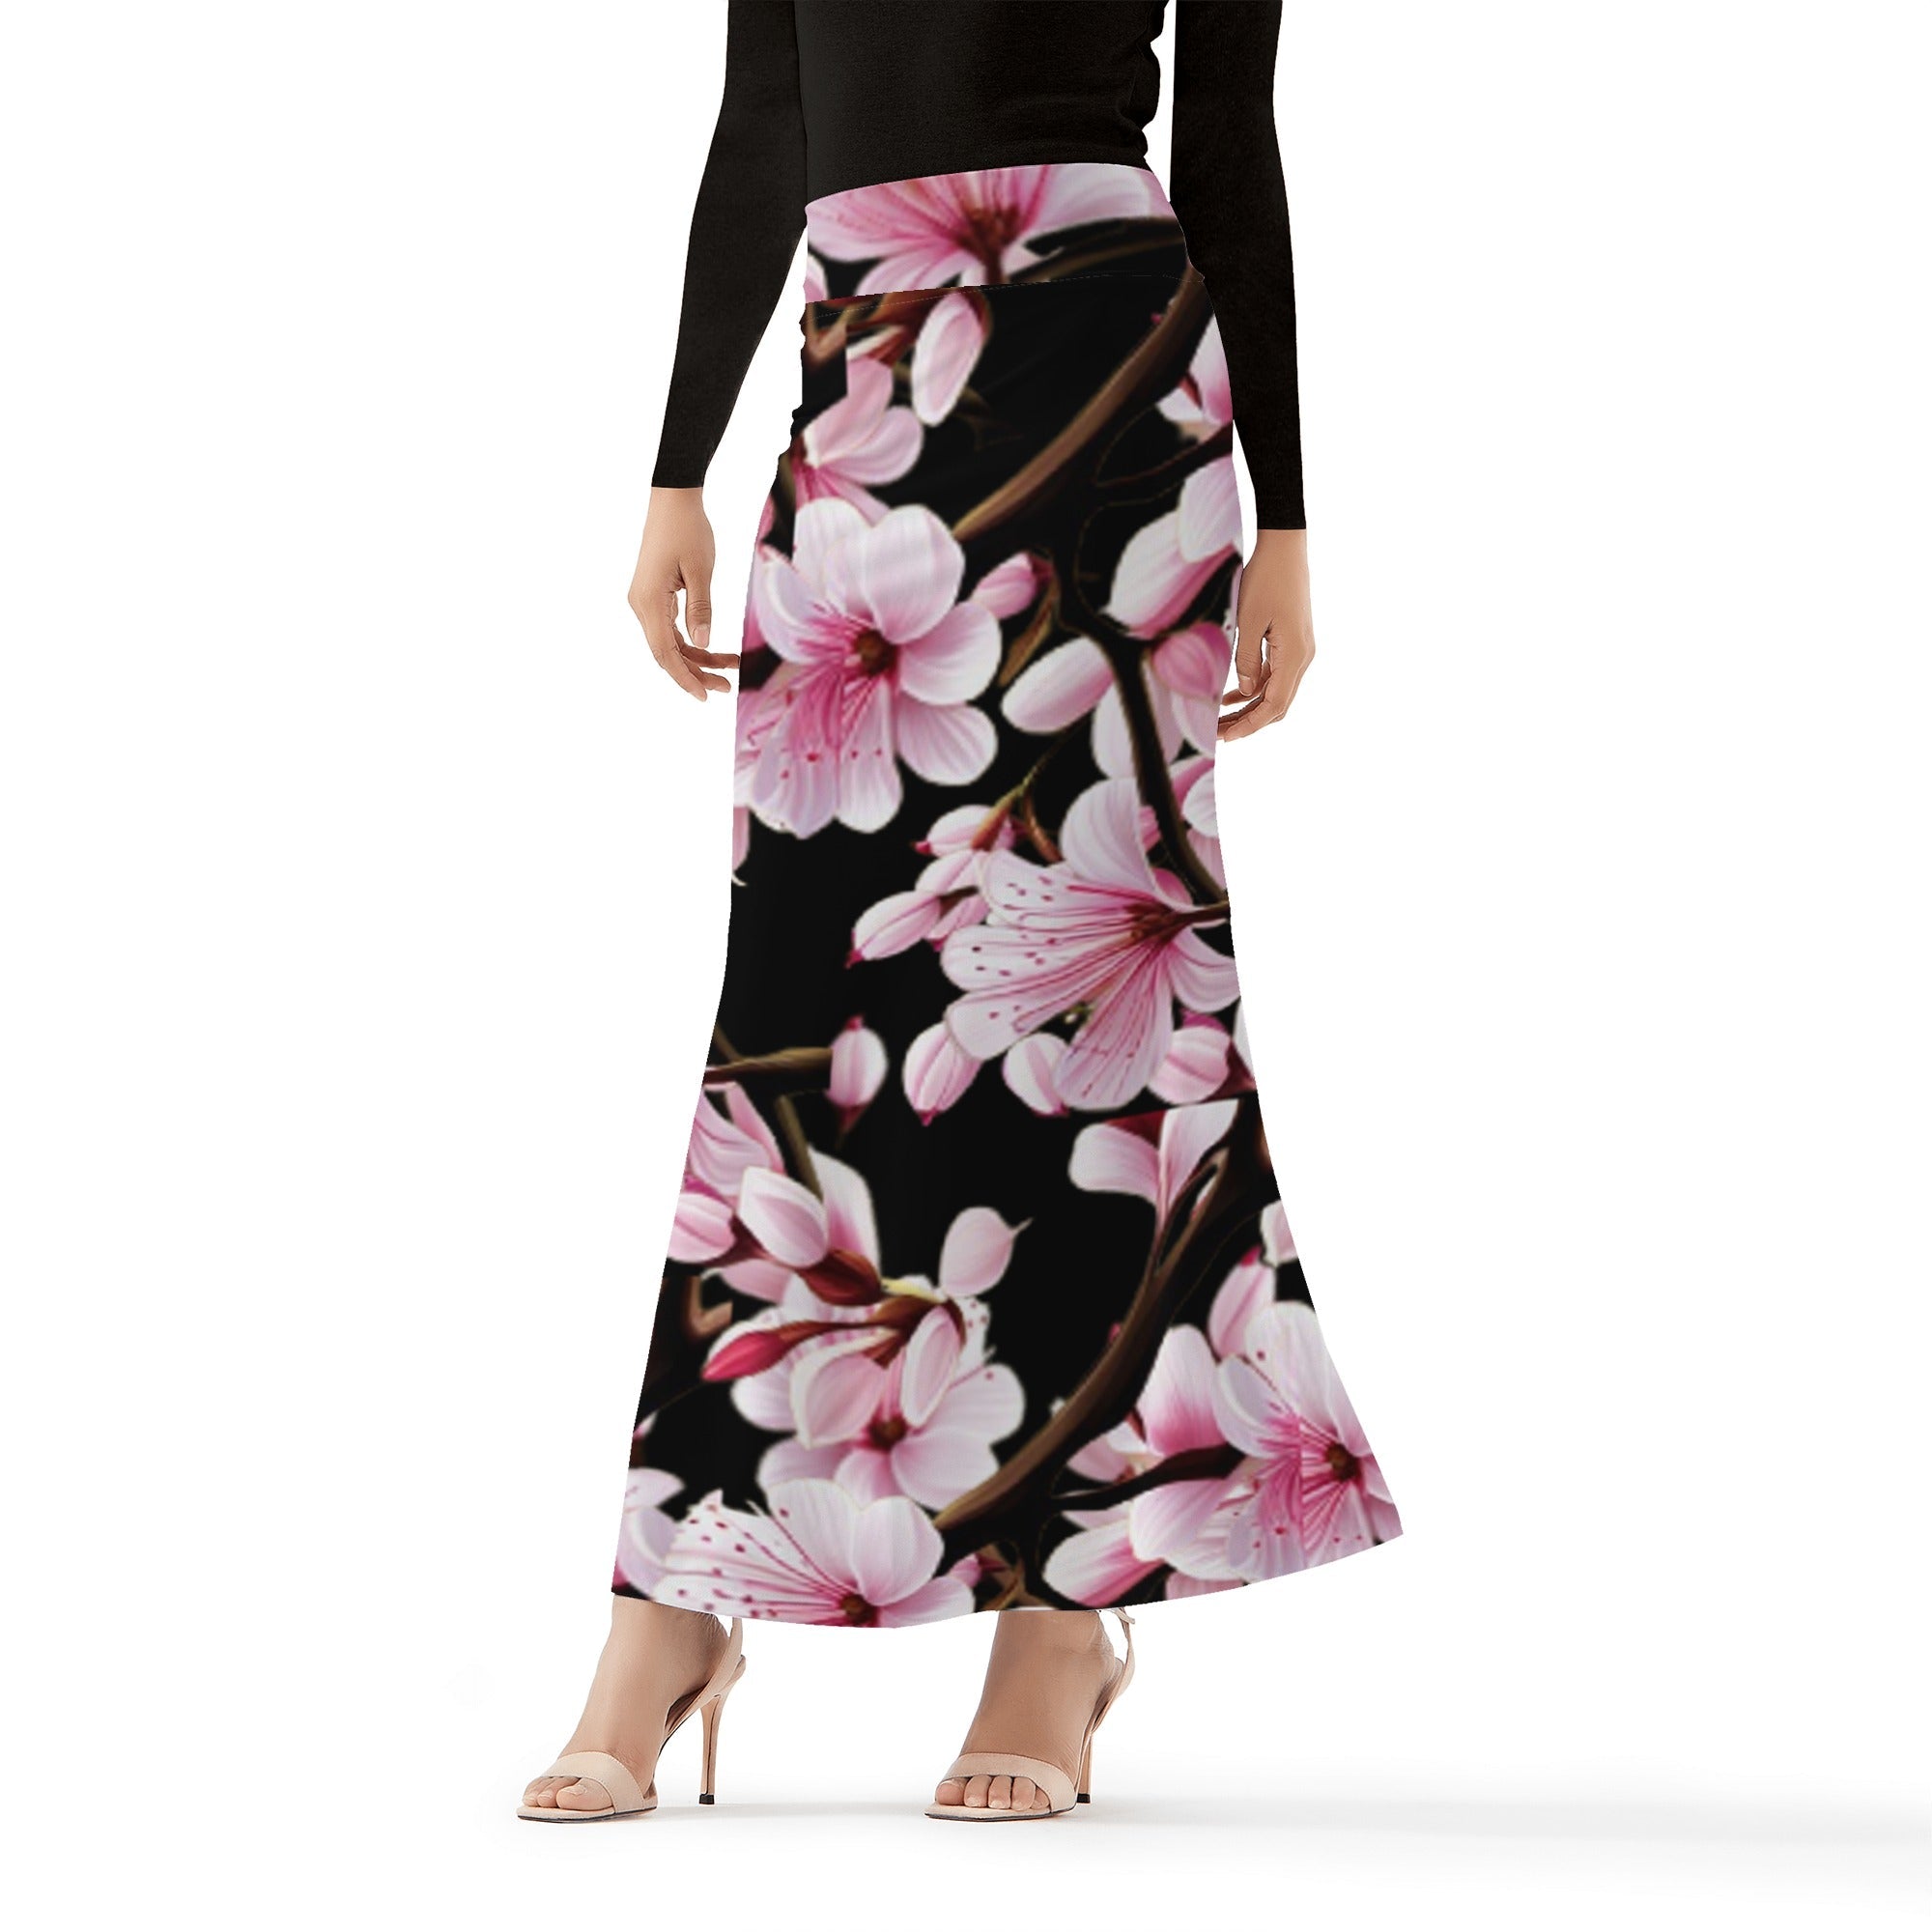 1 - Black - Cherry Blossom Womens Full Length Skirt - 3 colors - womens skirt at TFC&H Co.